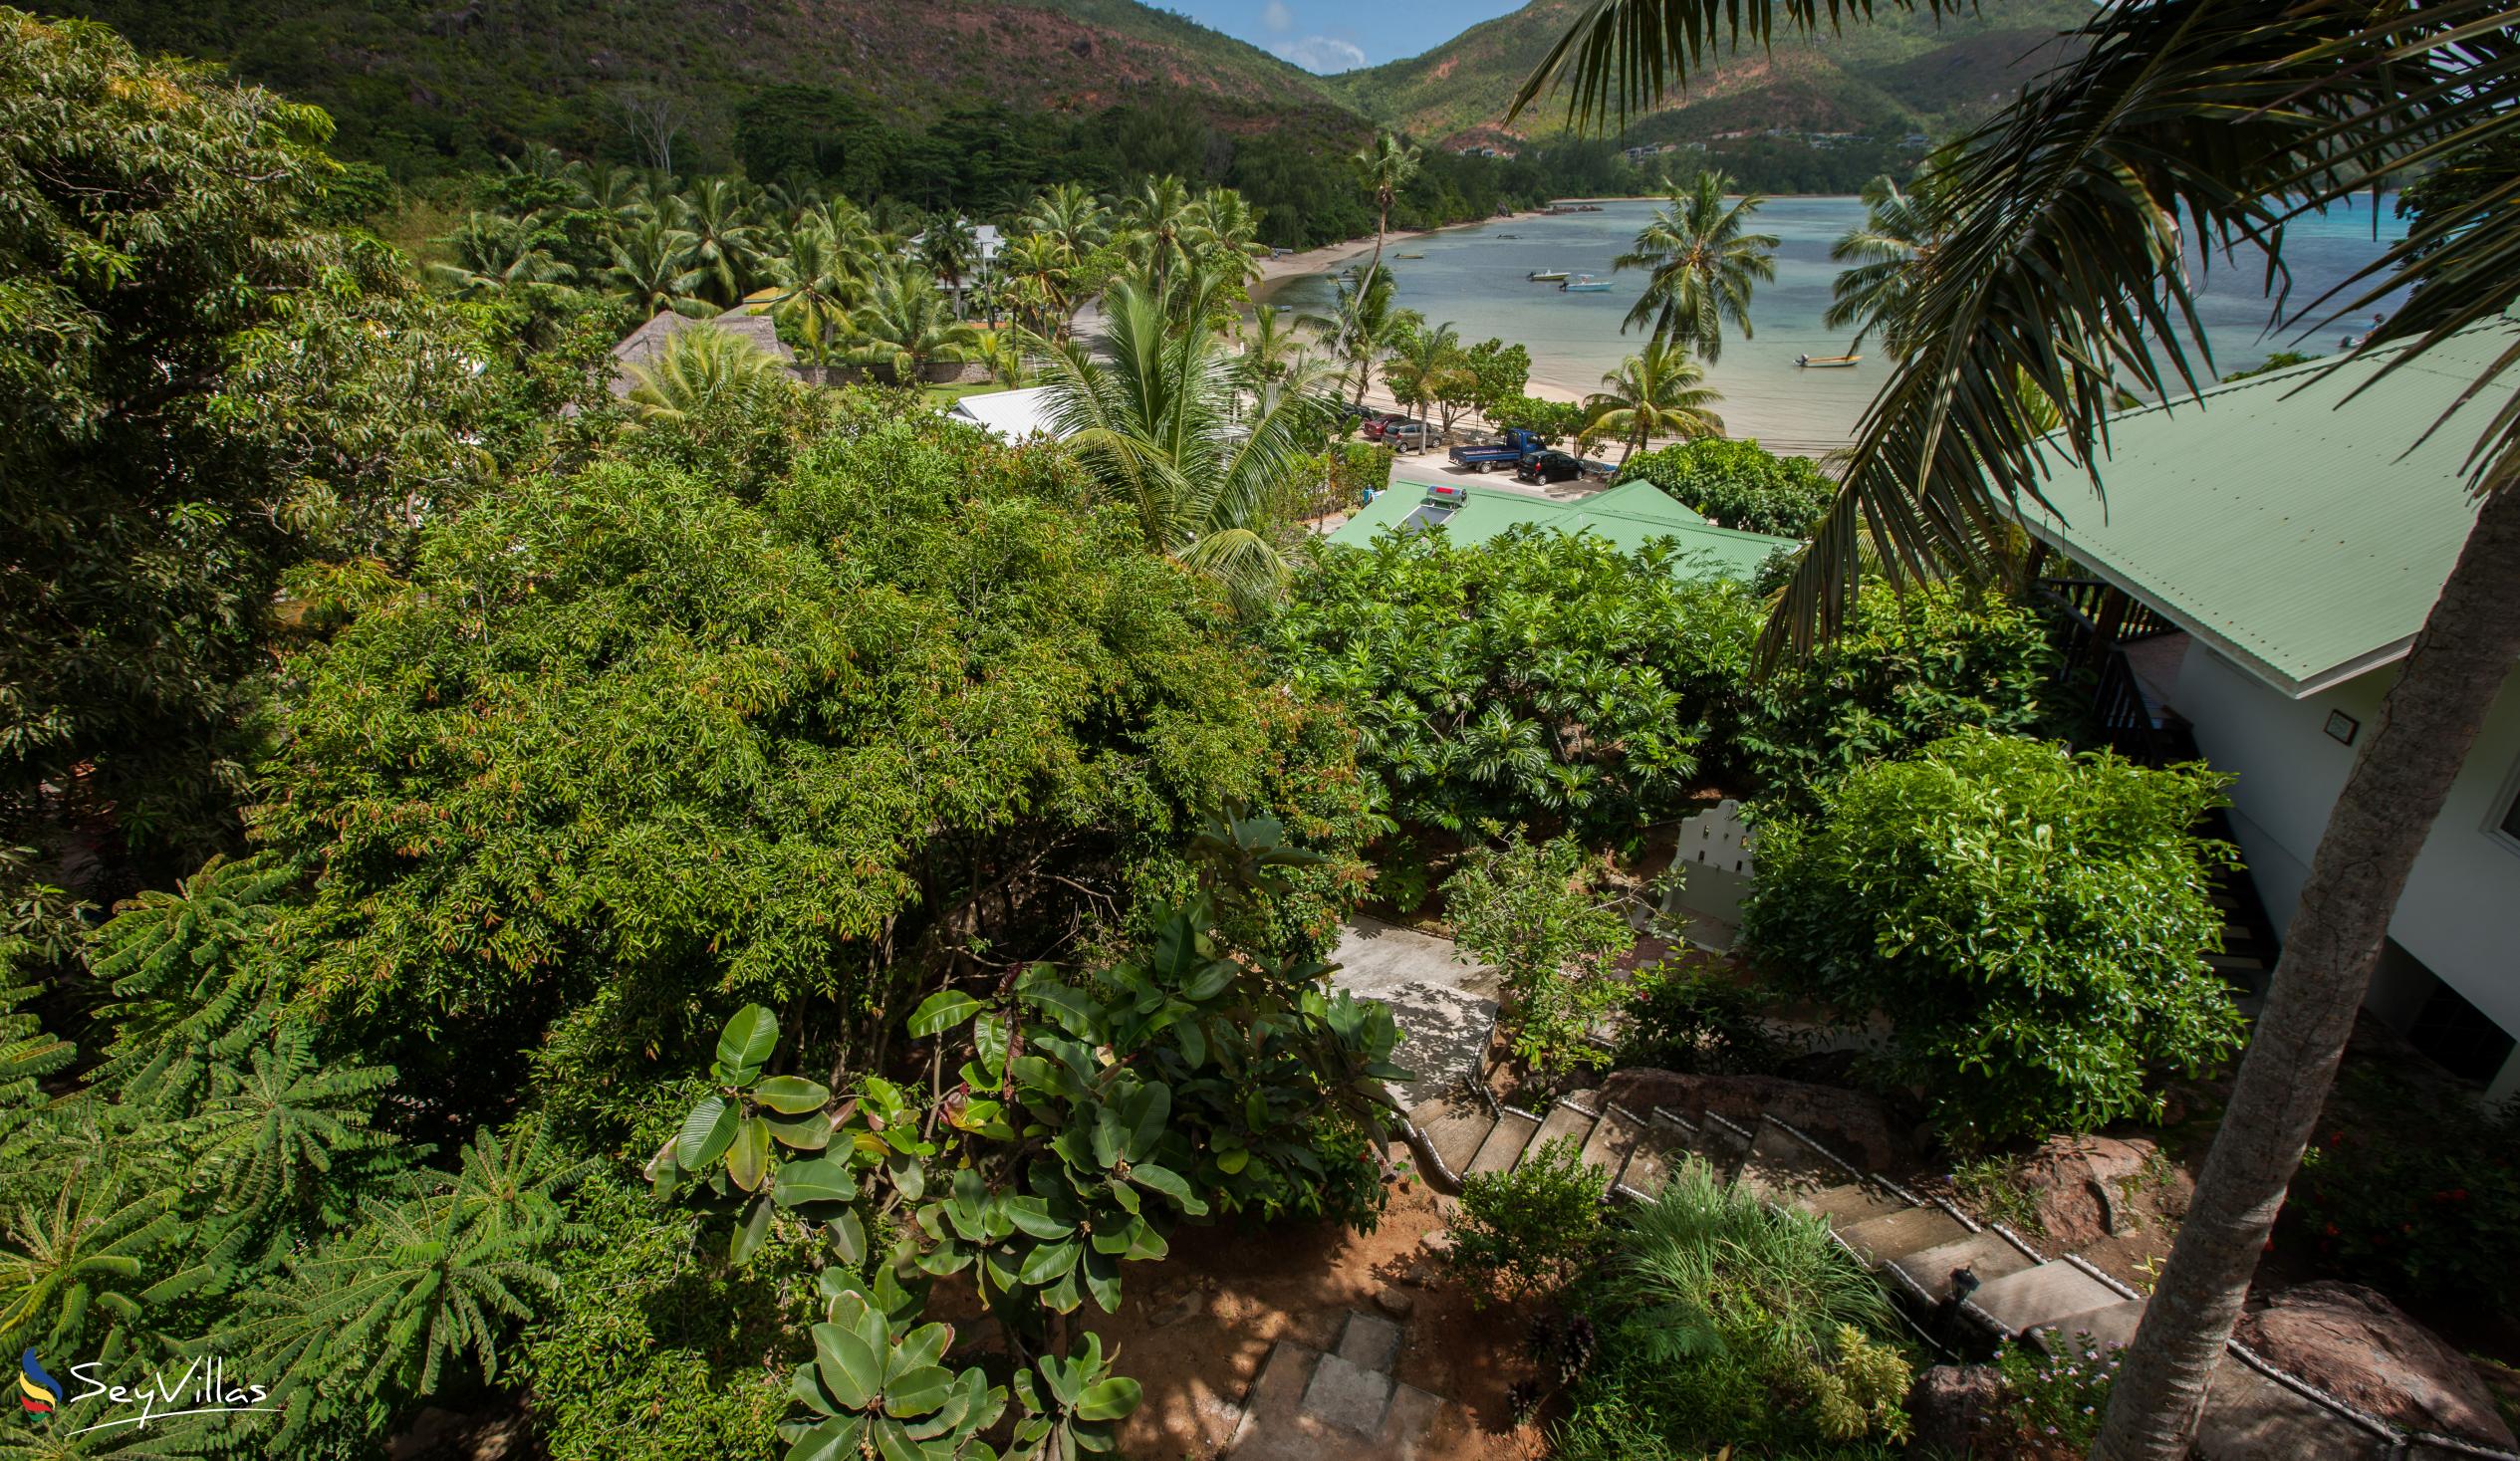 Foto 16: Sea View Lodge - Aussenbereich - Praslin (Seychellen)